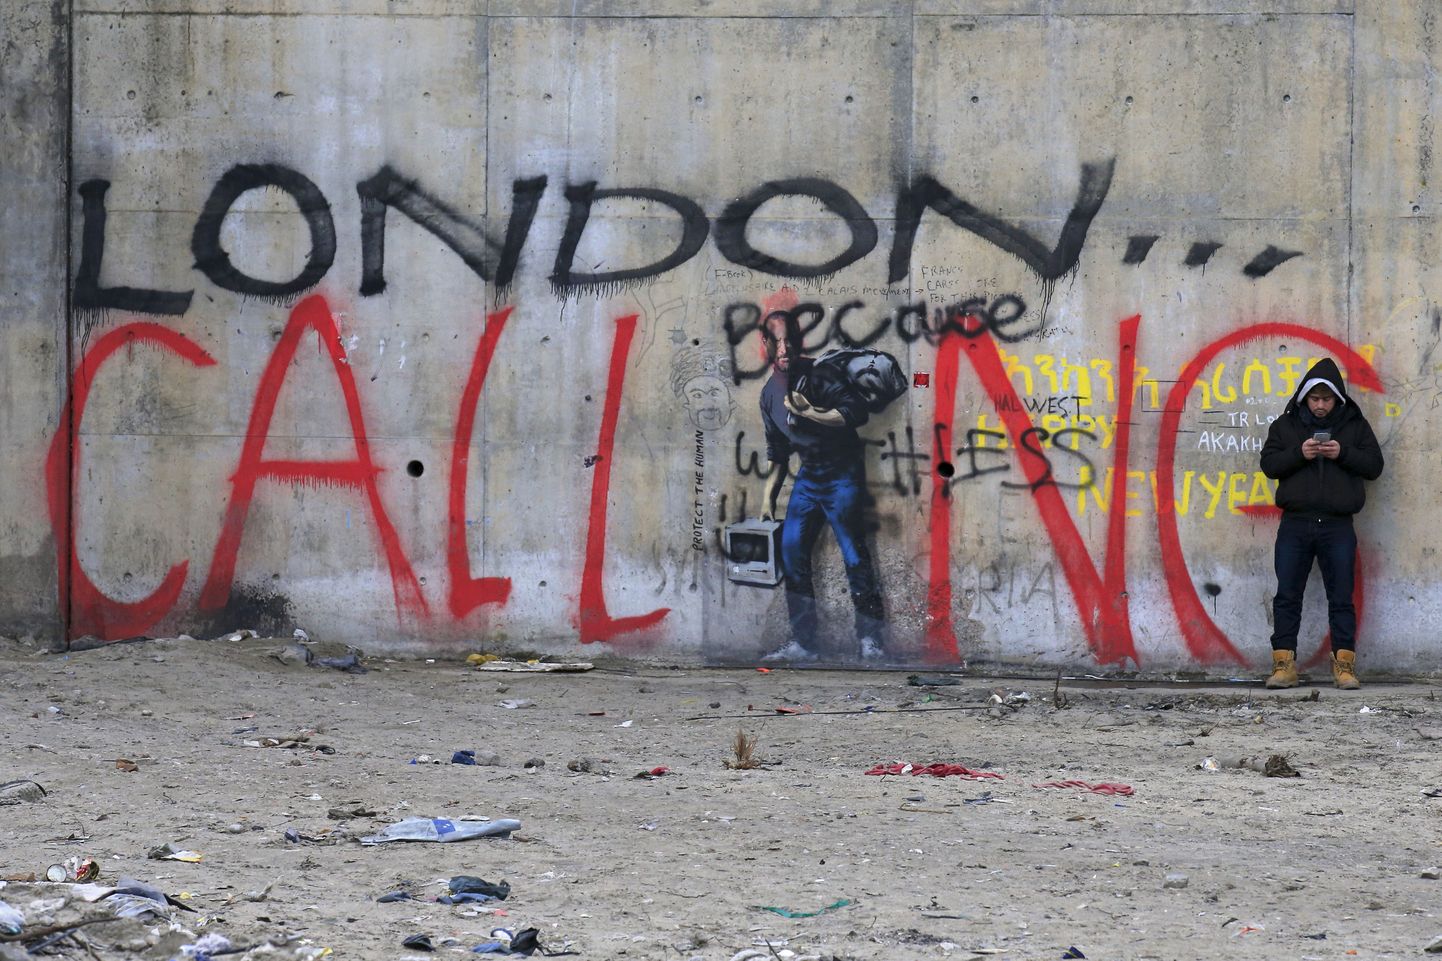 London kutsub, teatab grafiti Calais´s asuva migrantide laagri ehk nn džungli müüril.